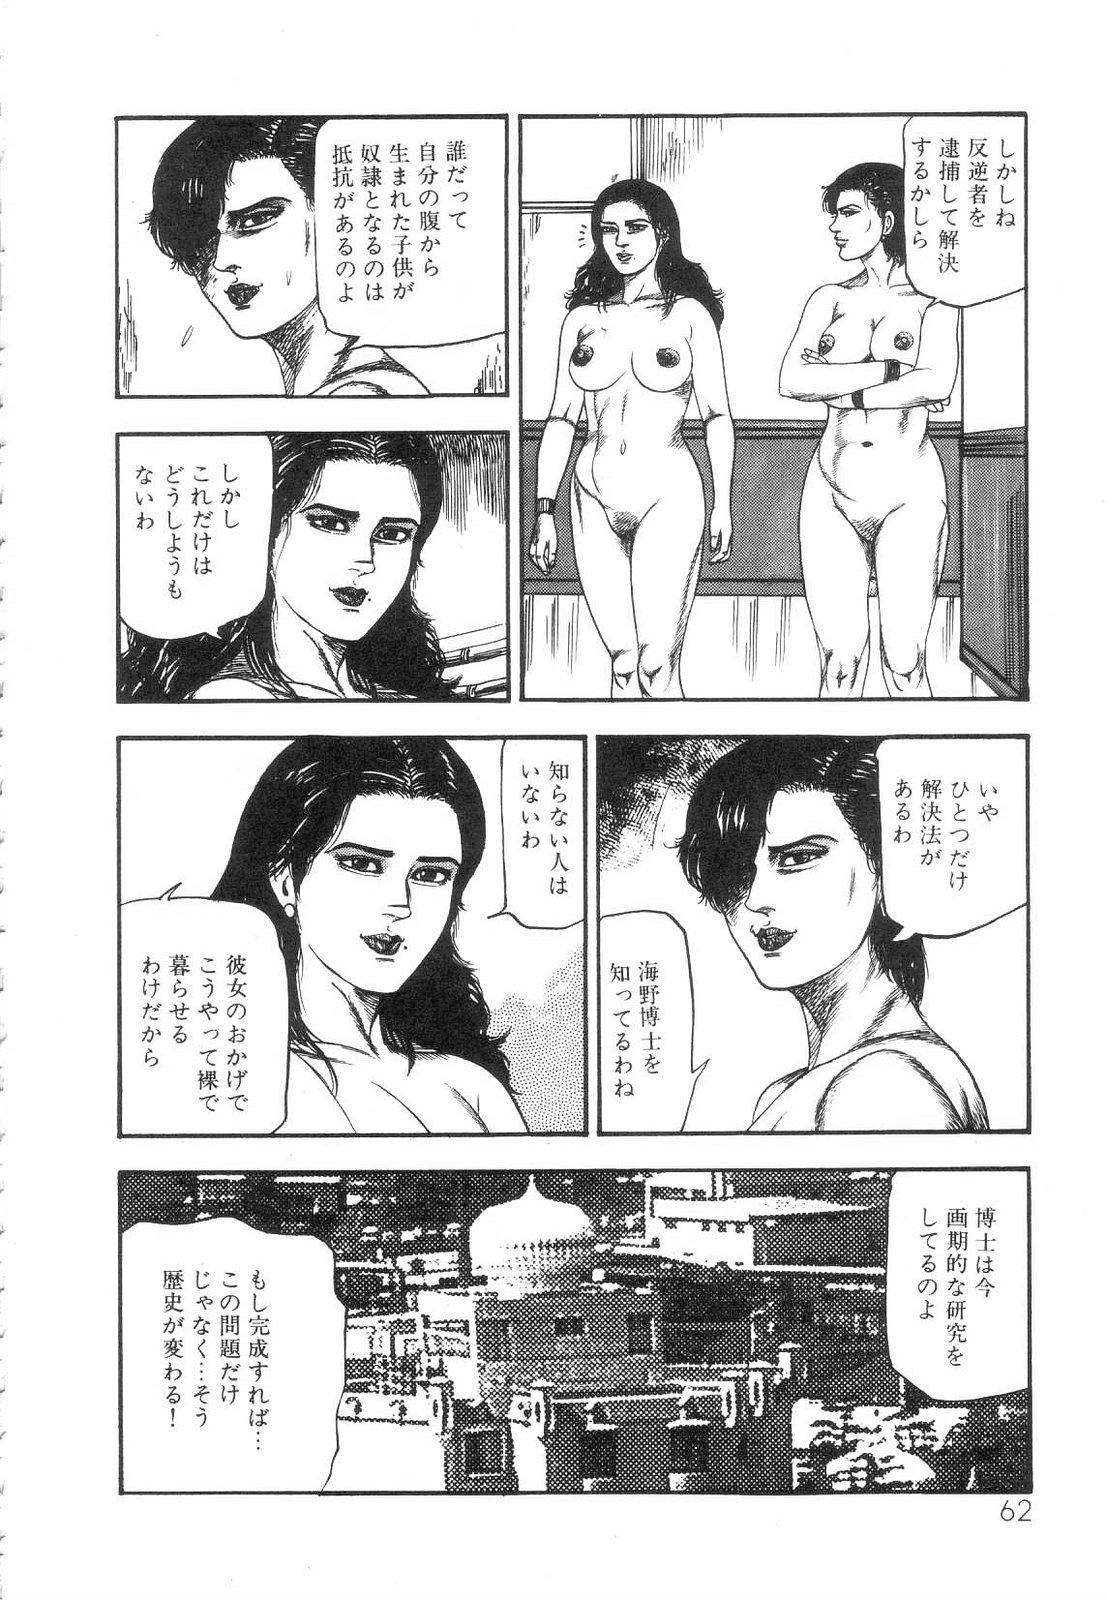 Shiro no Mokushiroku Vol. 5 - Ninshoujo Erika no Shou 63